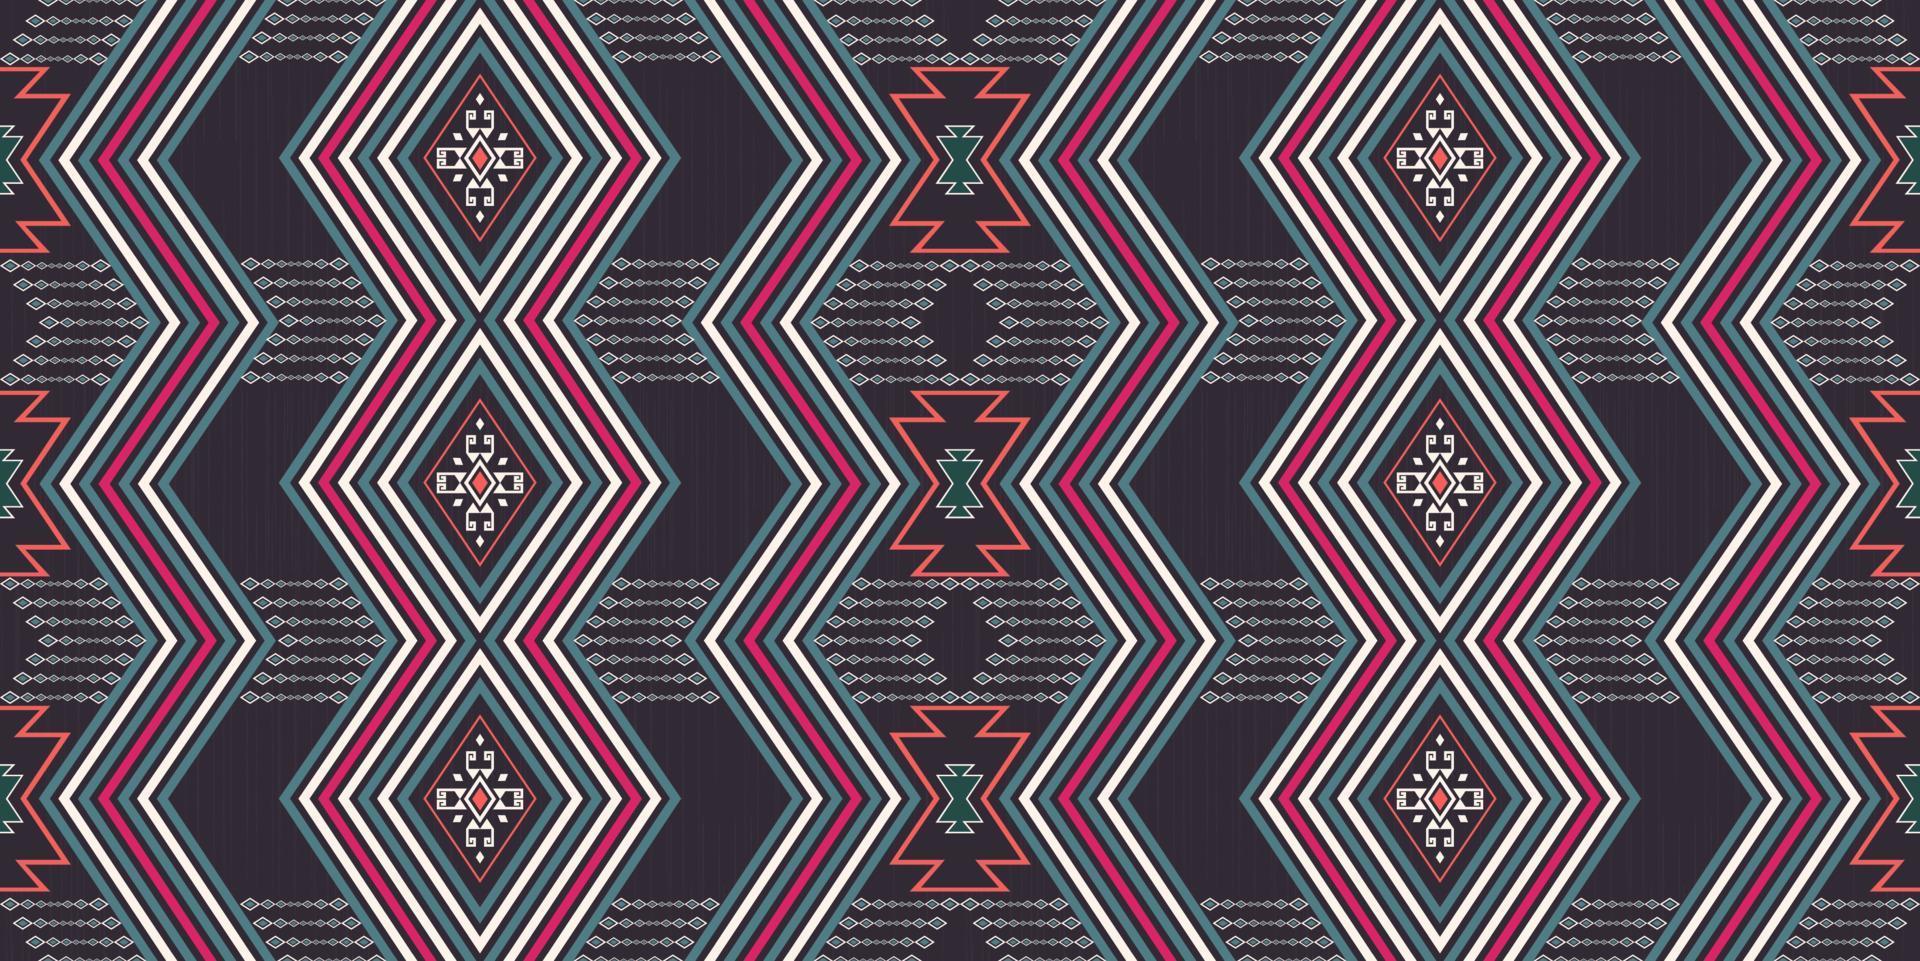 nativo azteca y rombo zig zag línea forma geométrica fondo transparente. diseño de patrón de color tribal étnico. uso para telas, textiles, elementos de decoración de interiores, tapicería, envoltura. vector